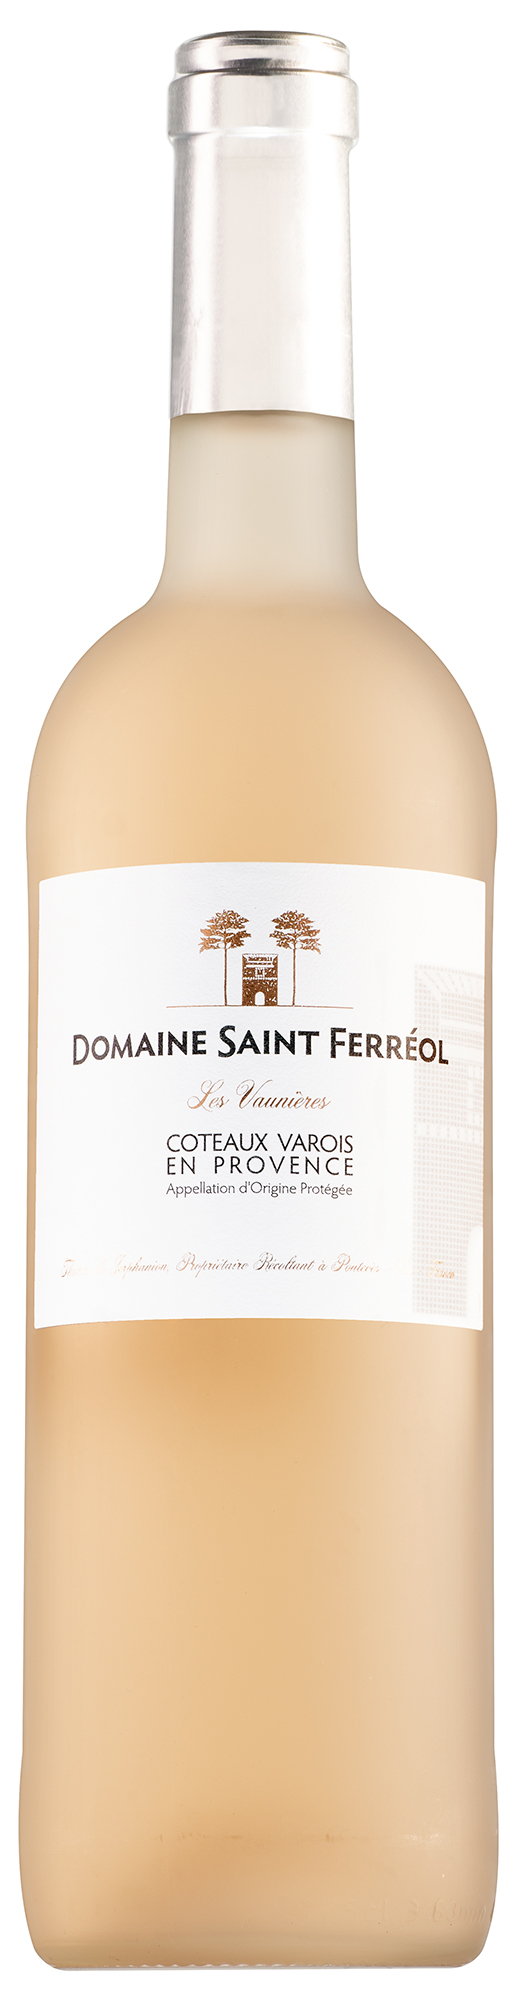 Domaine Saint Ferréol Coteaux Varois en Provence Les Vaunières Rosé